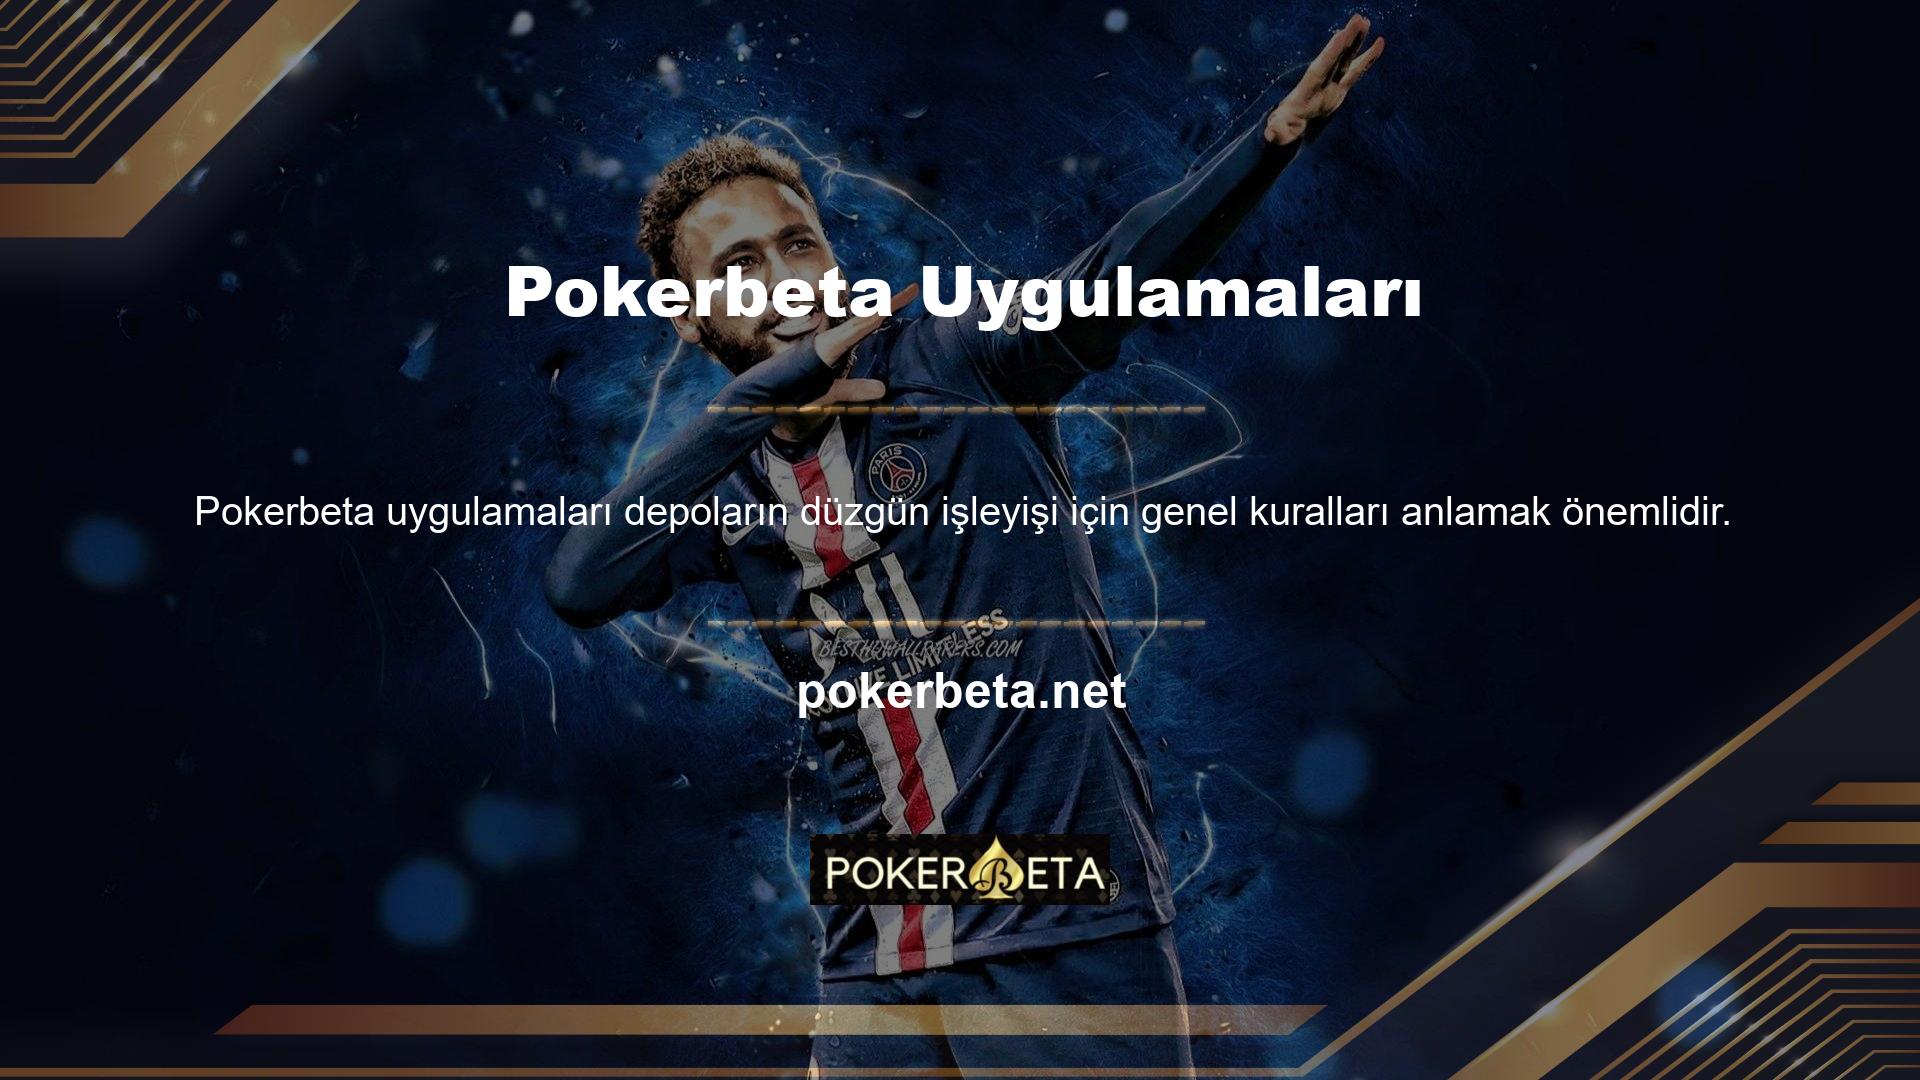 Pokerbeta web sitesinde bulunan tüm oyunların kısıtlamaları vardır